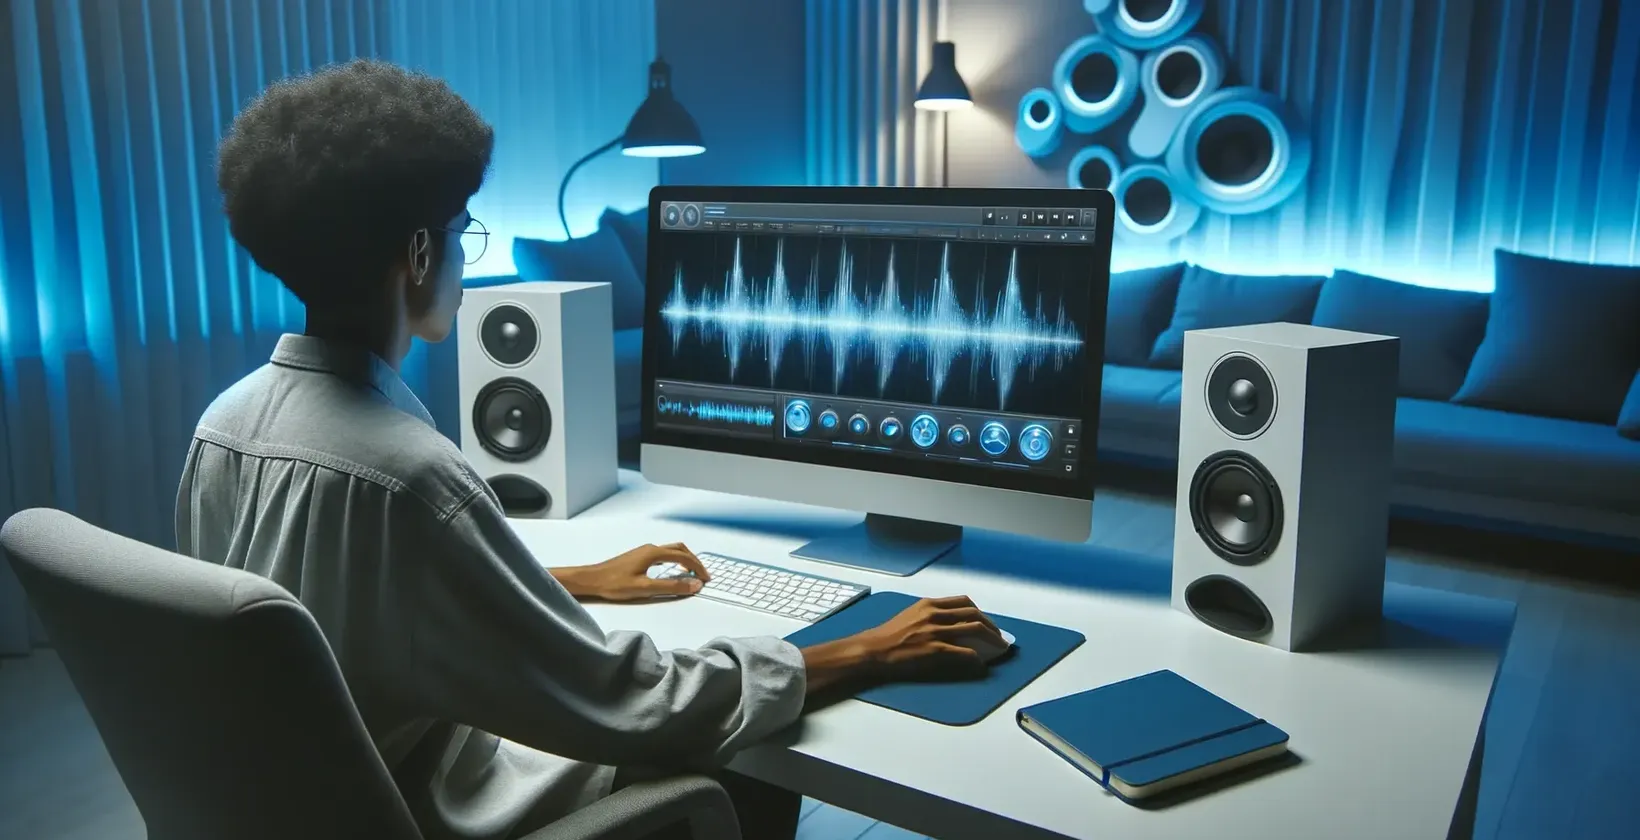 Человек работает на компьютере, добавляя текст к отснятому видео в современной студийной обстановке с колонками